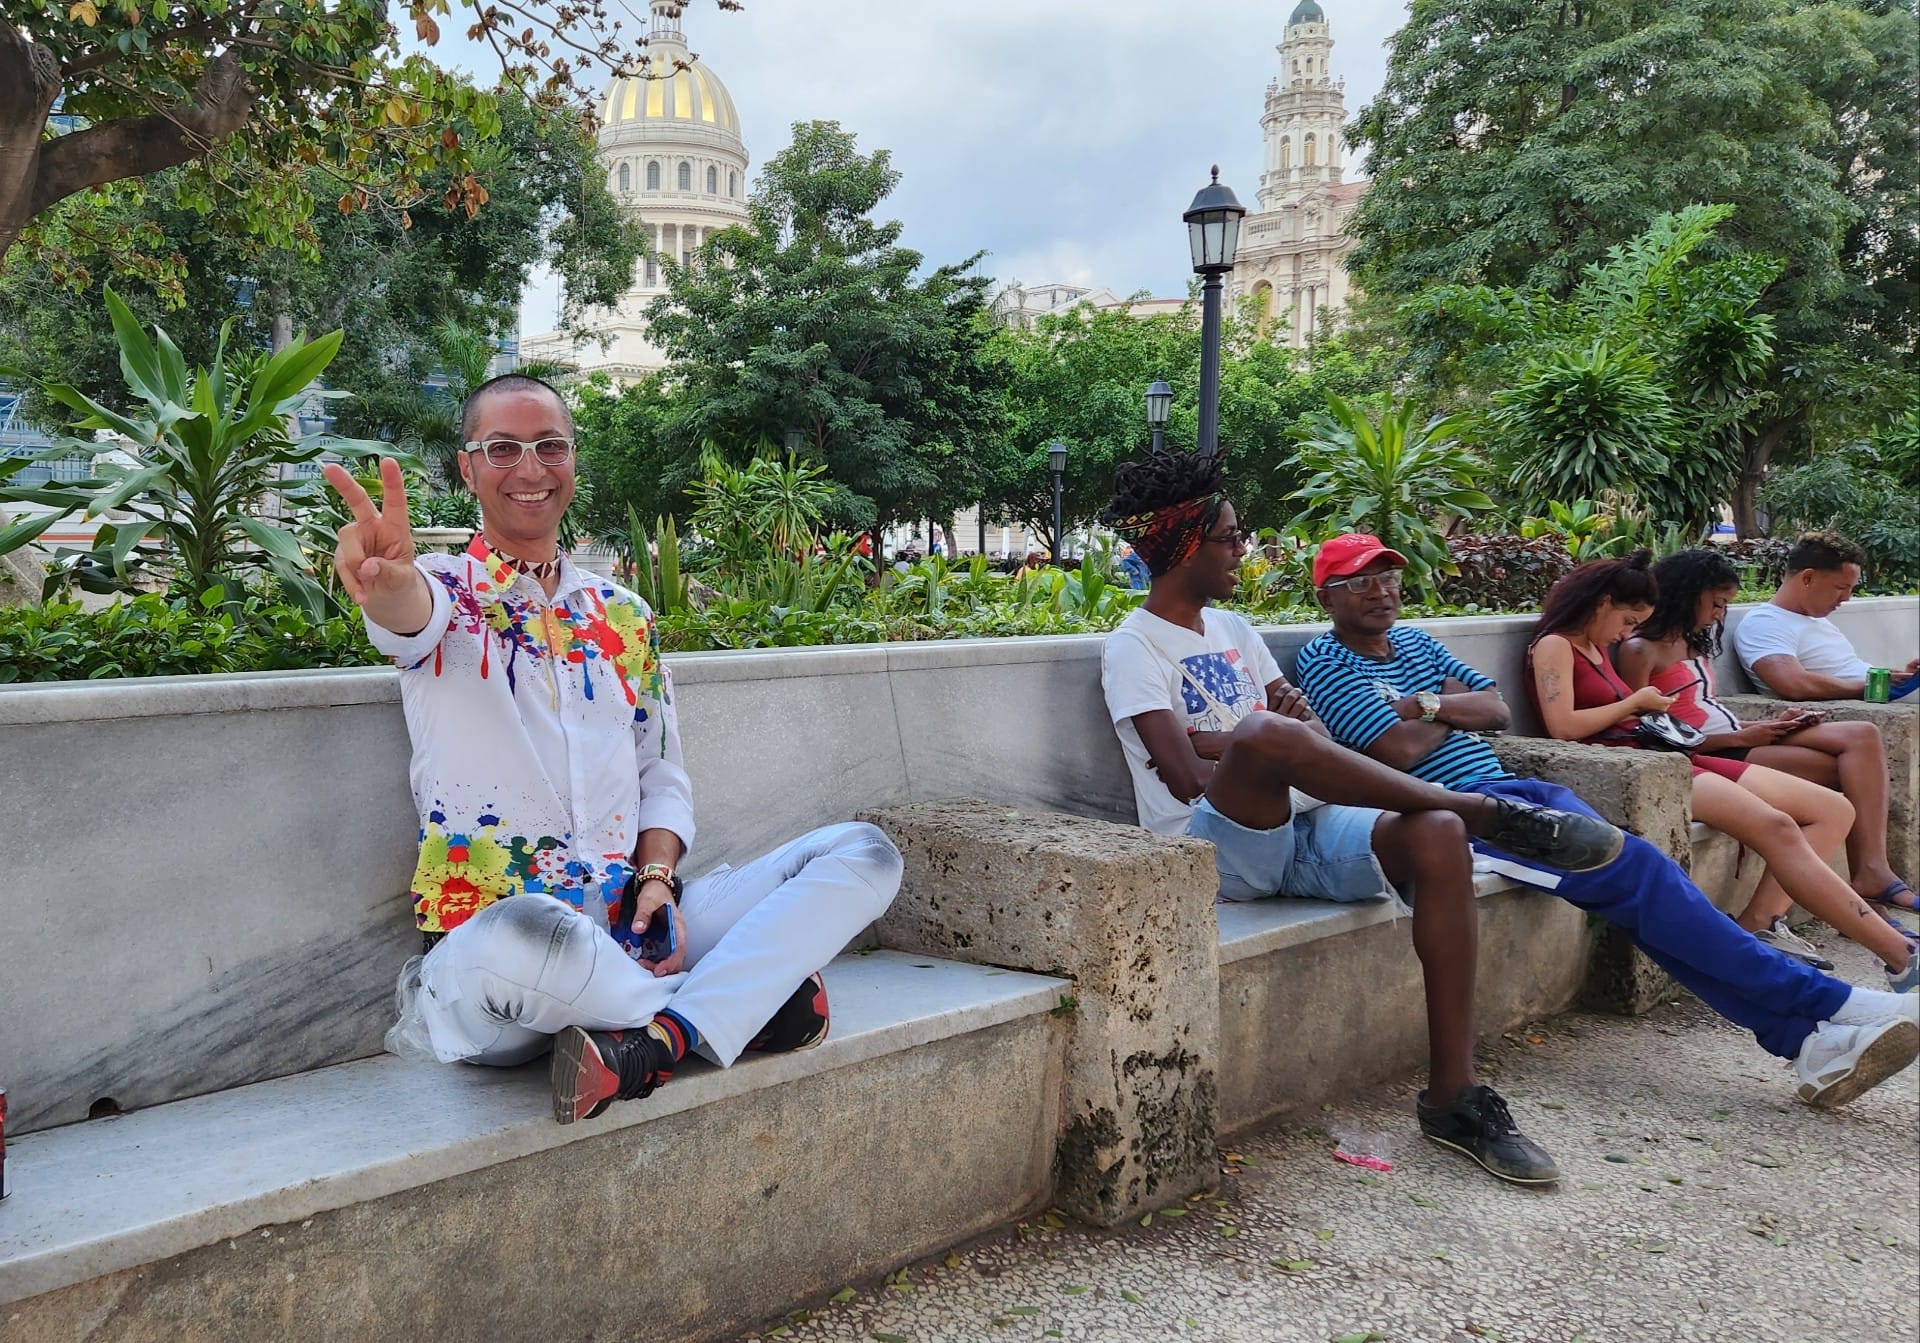 Im Hintergrund seht Ihr die Kuppel des berühmten Capitols und ein Stück des großen Theaters der Stadt. Fotoreise durch Kuba.